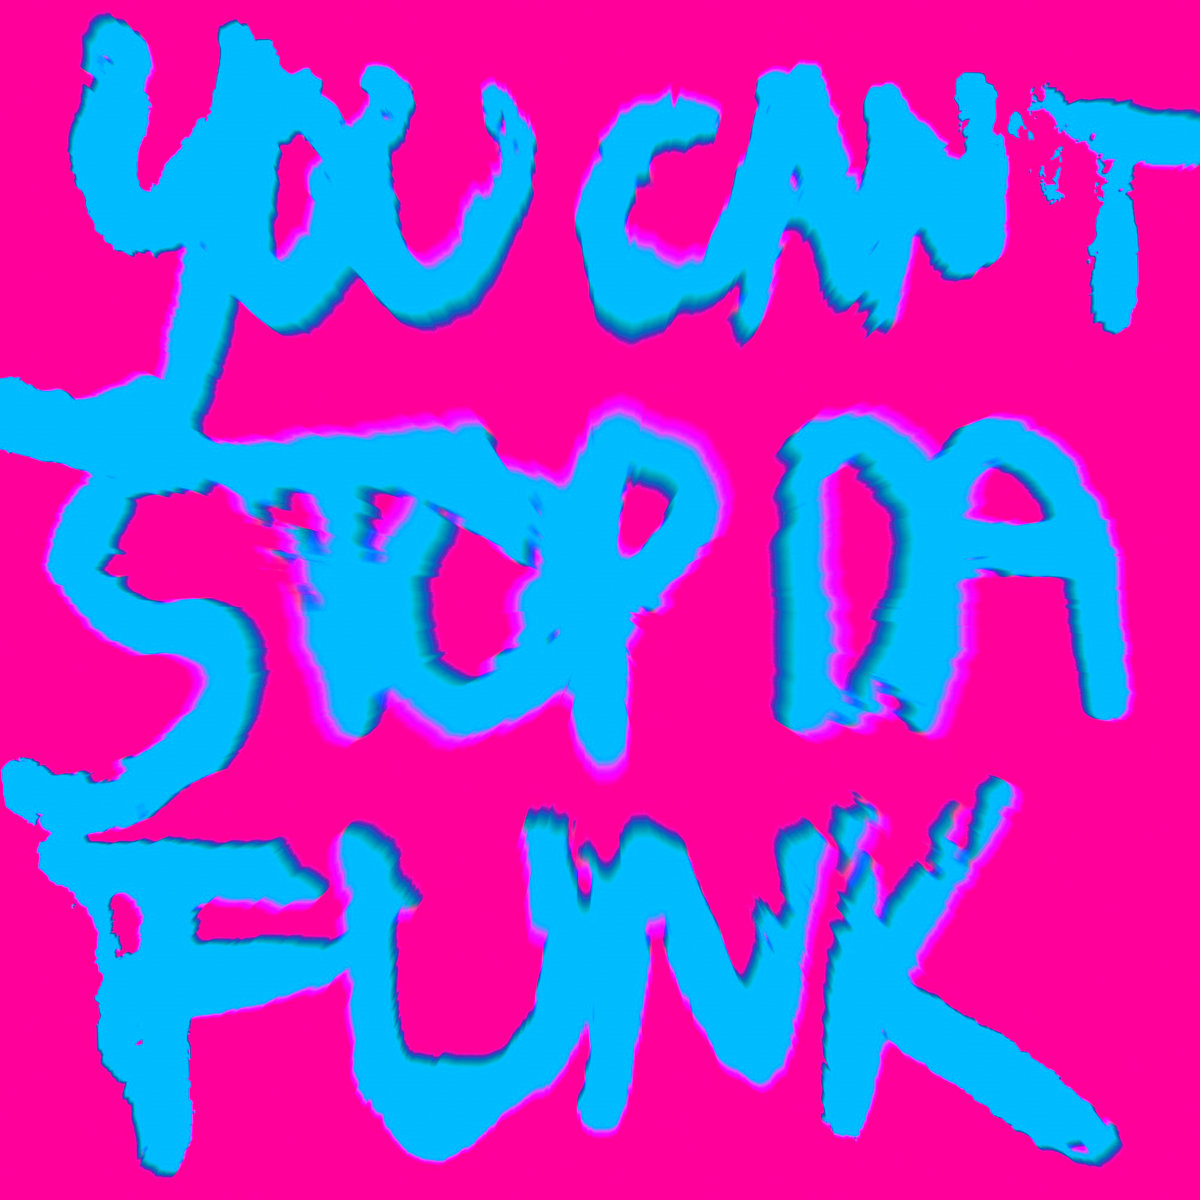 You Can't Stop Da Funk album art